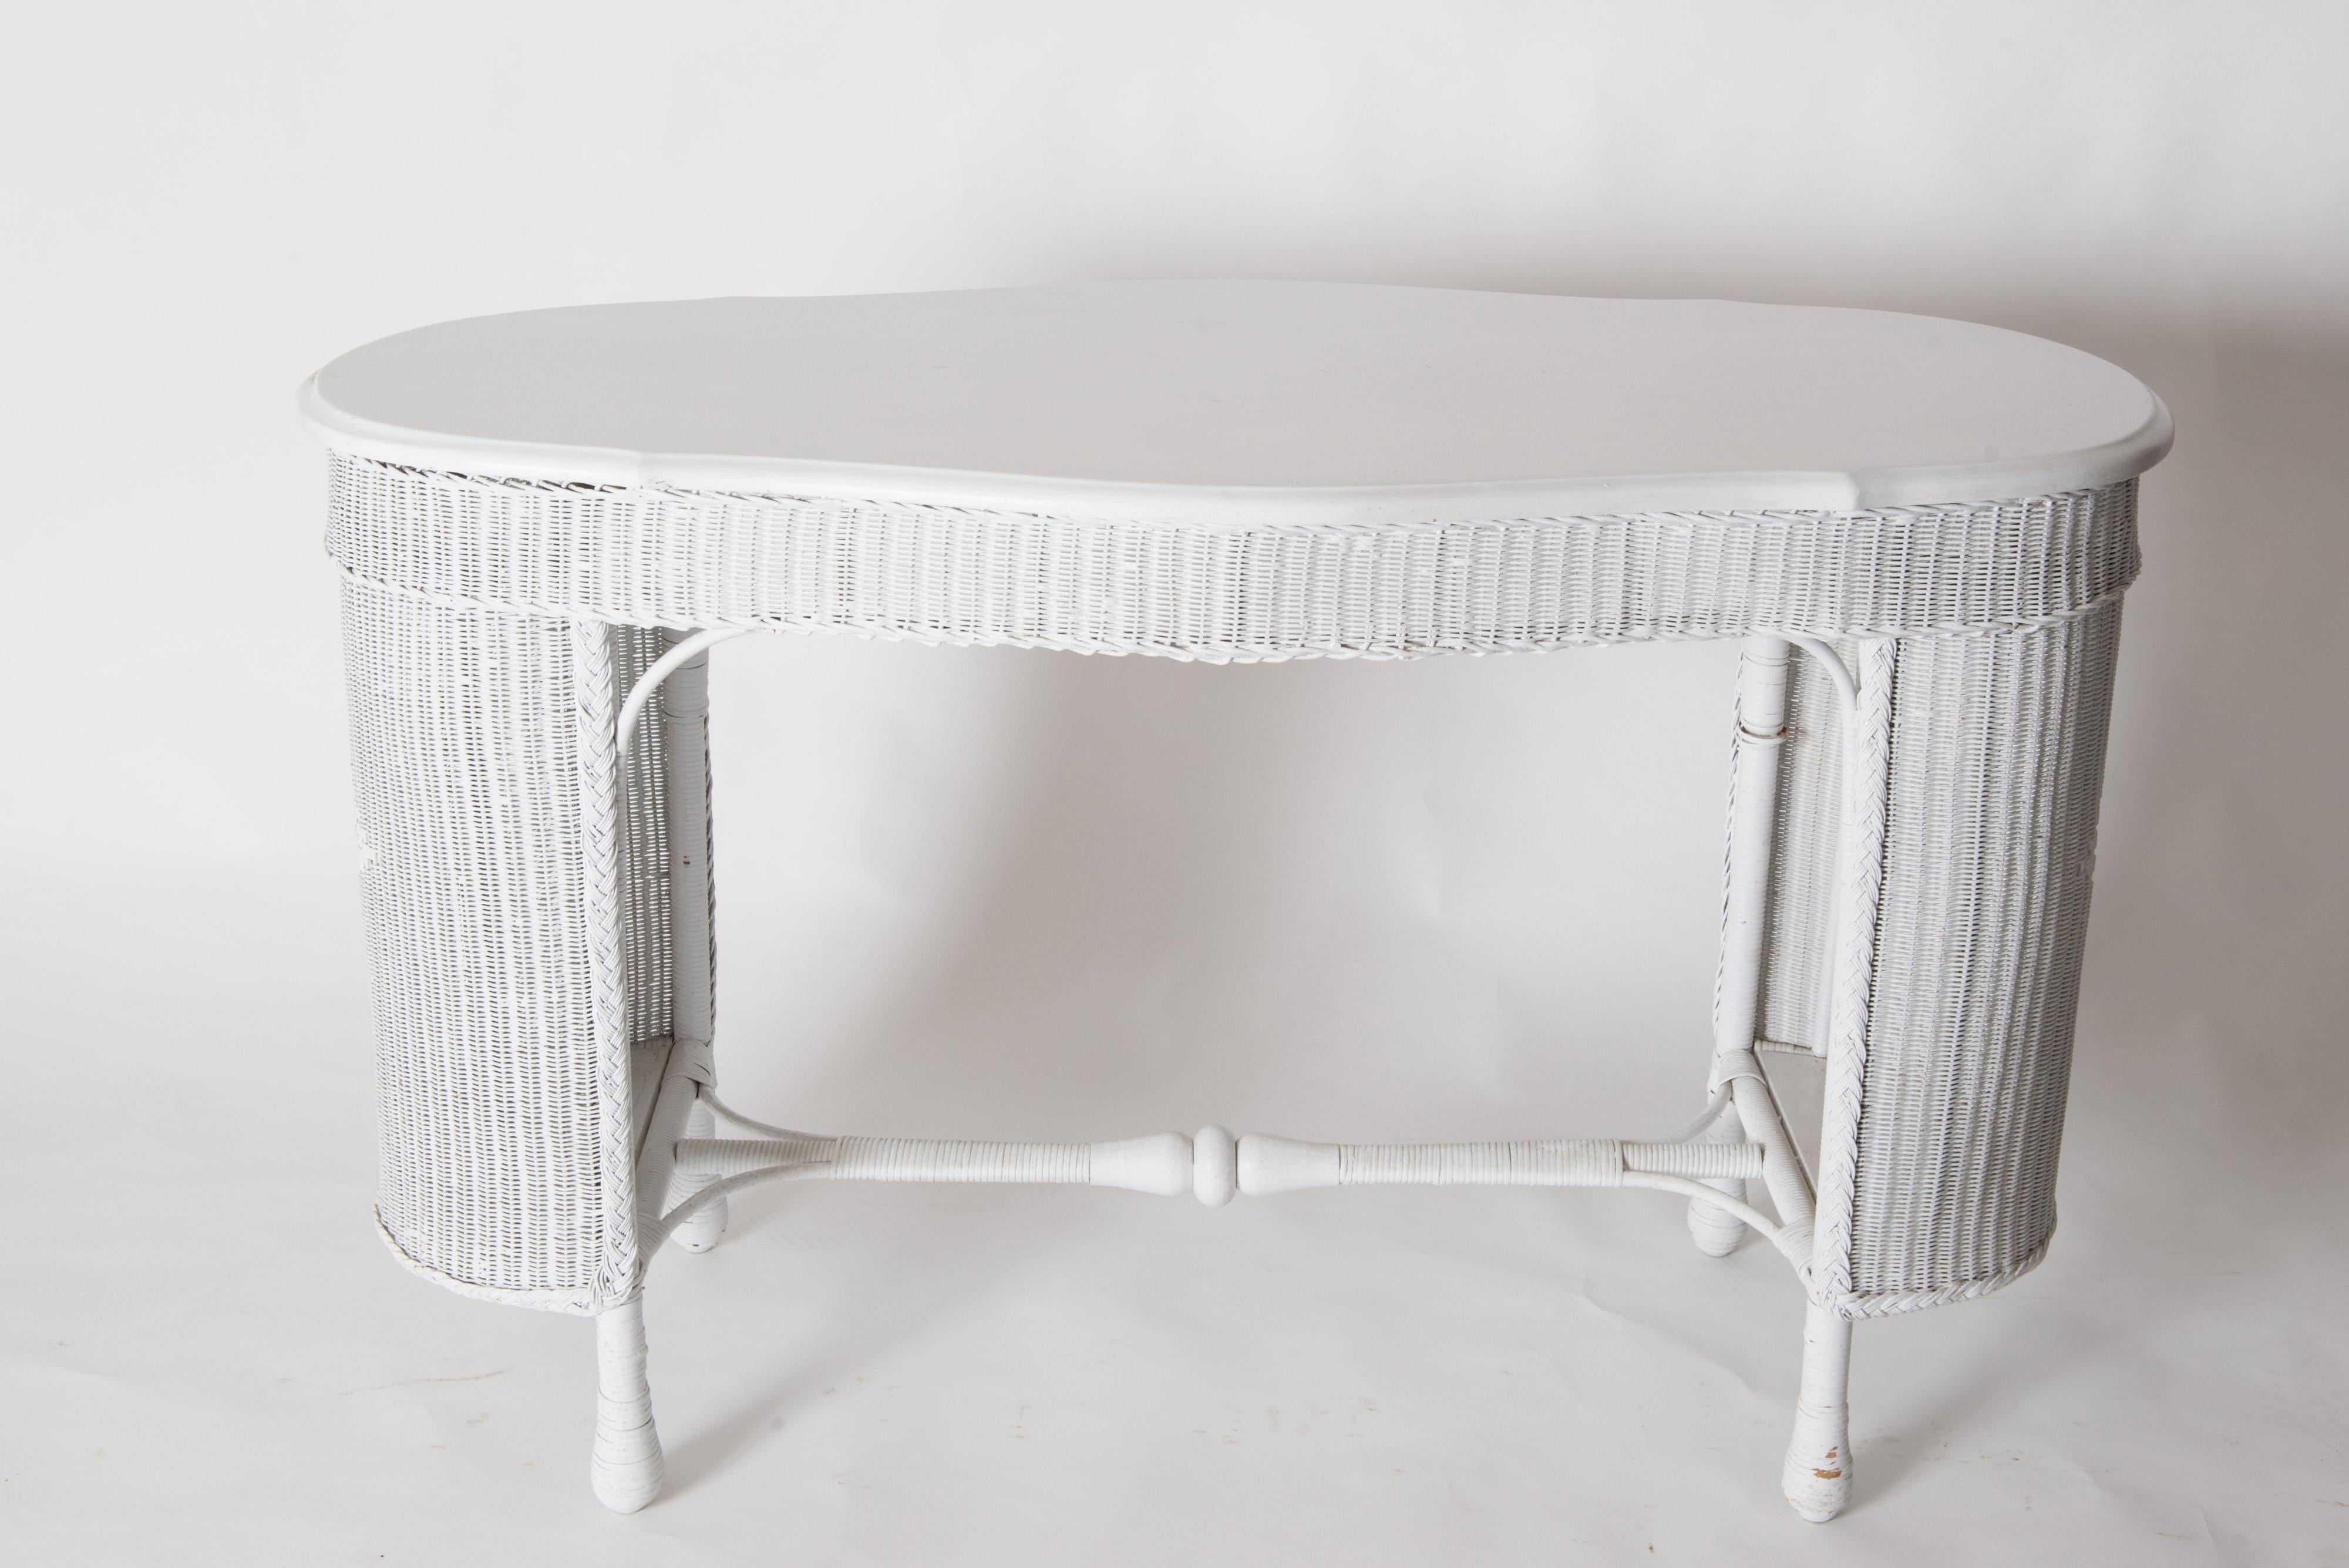 Vieille table ou bureau en osier, roseau ou rotin, avec une chaise en osier. Les deux pièces datent du début du XIXe siècle et ont été fraîchement peintes en gris clair. Excellent état vintage.